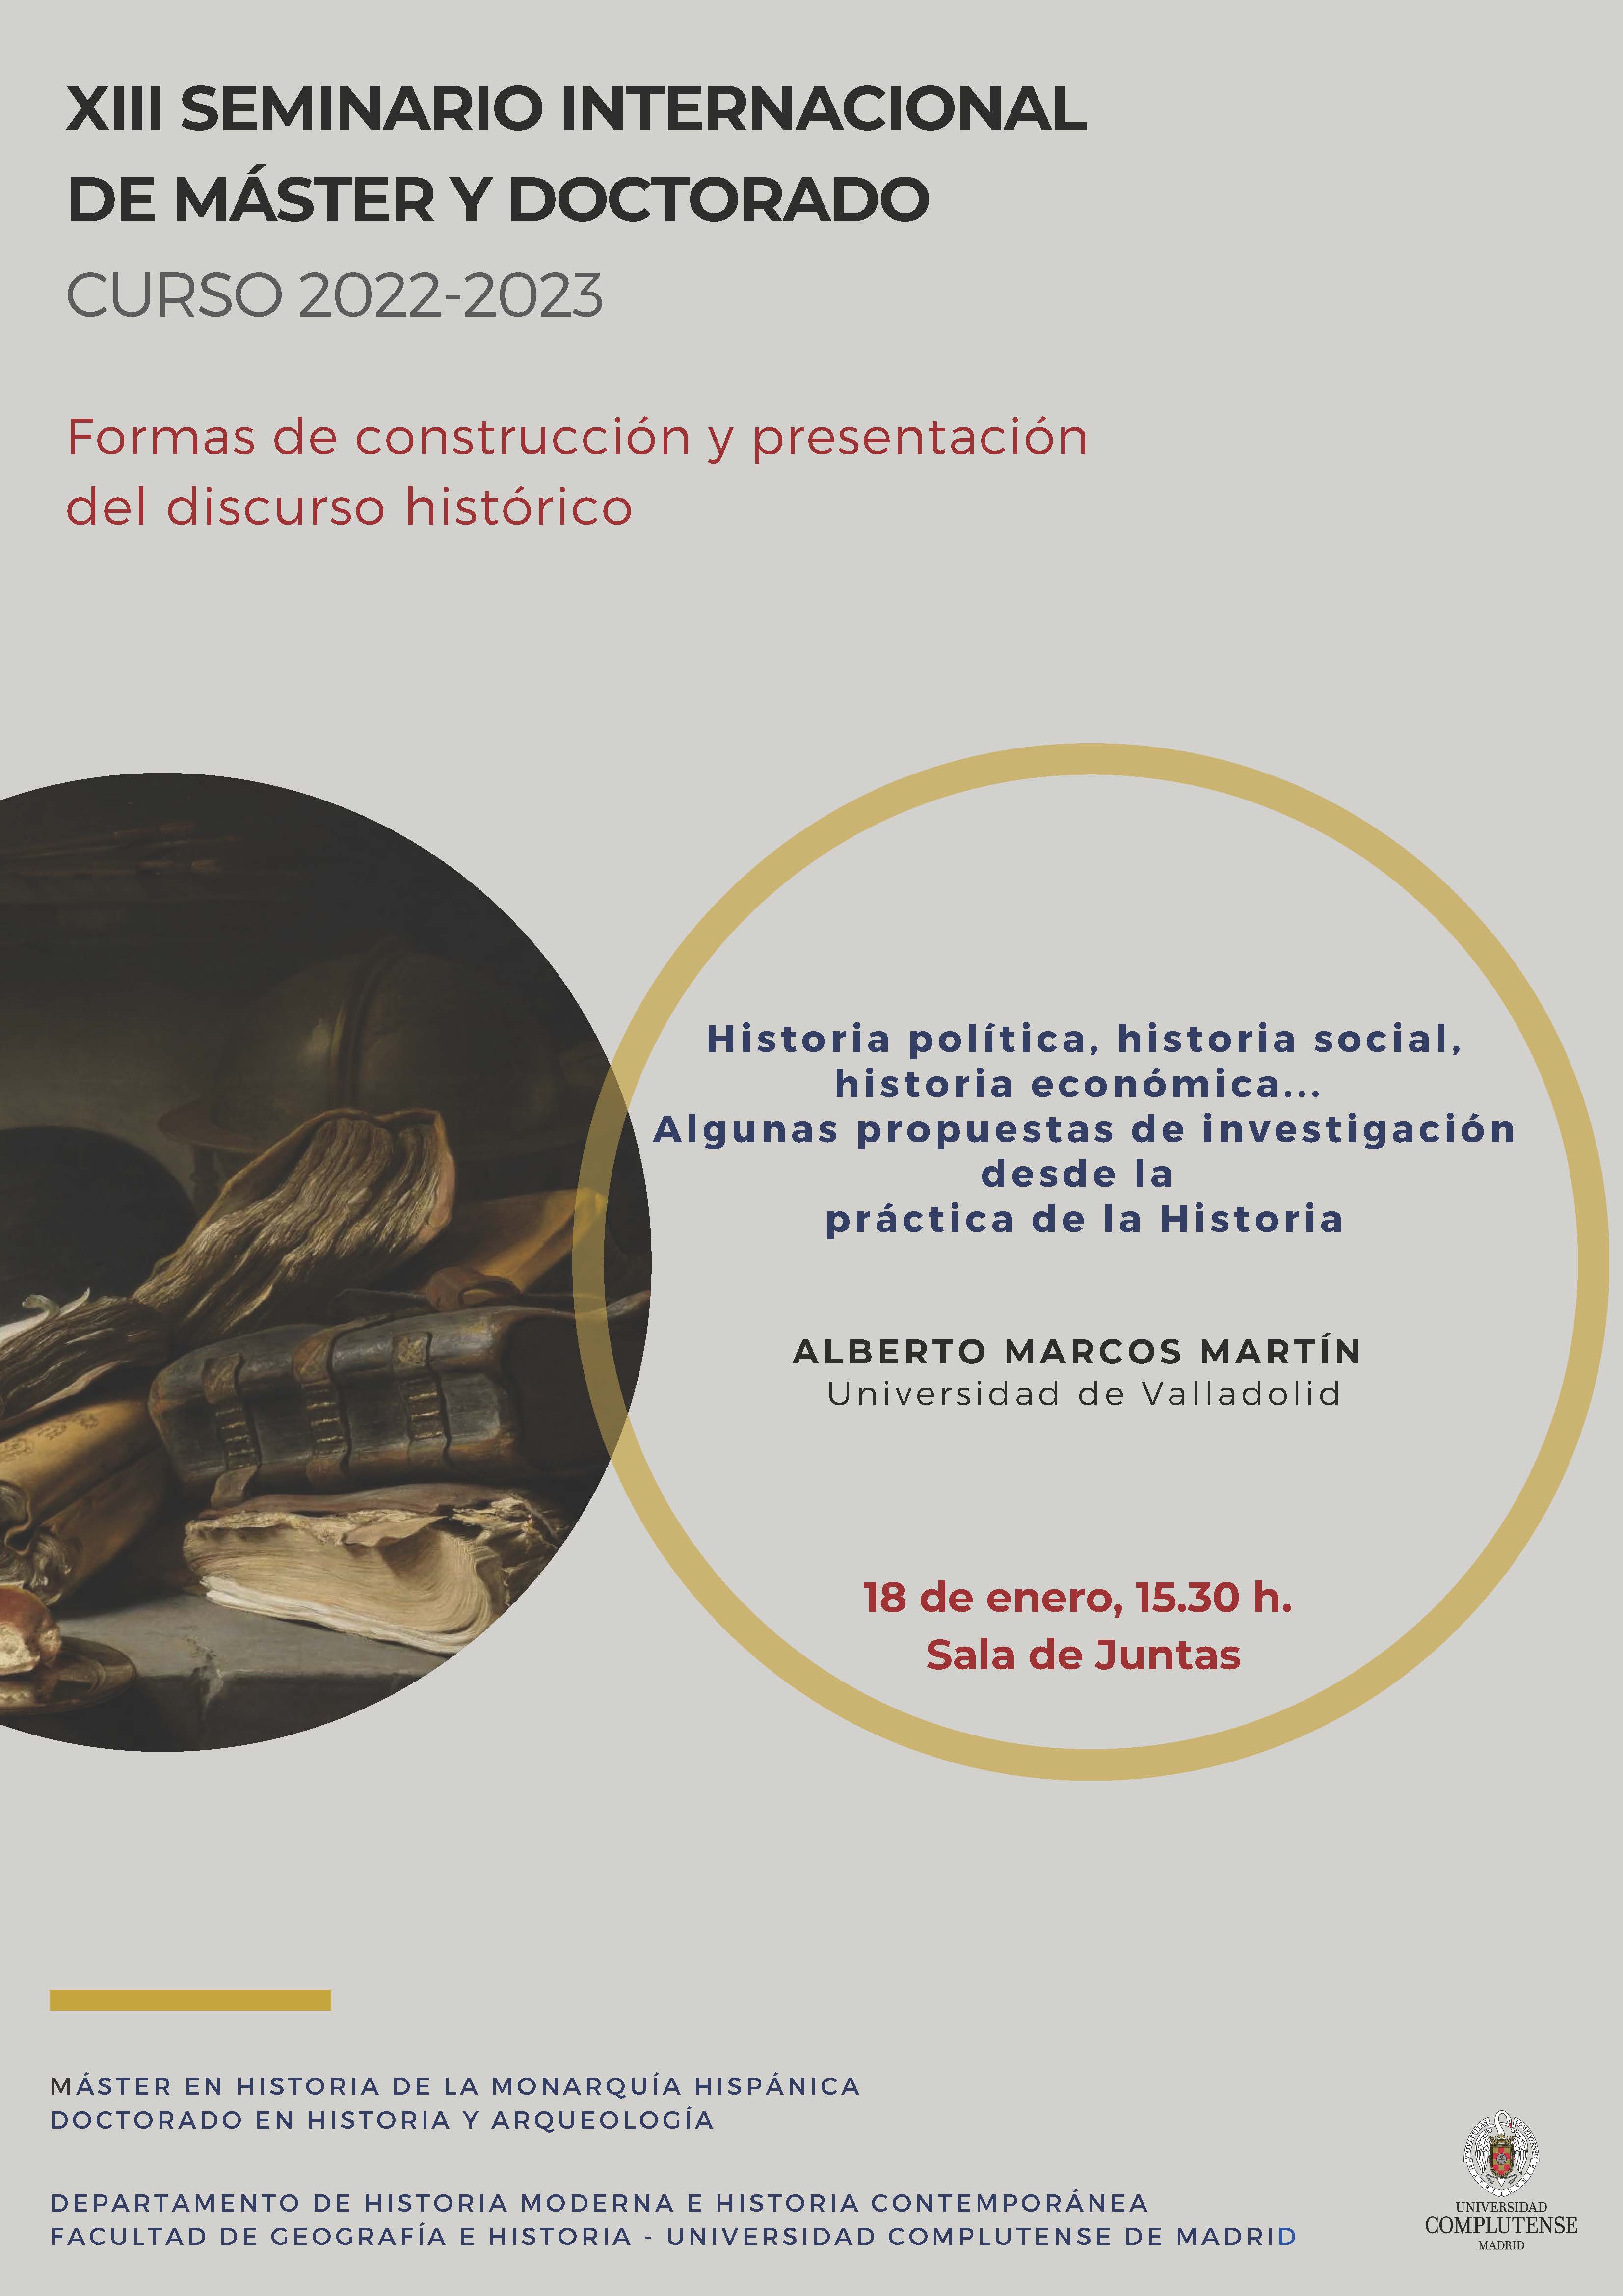 2ª Sesión. XIII Seminario Internacional Formas de construcción y presentación del discurso histórico - Alberto Marcos Martín (18.01.2023)